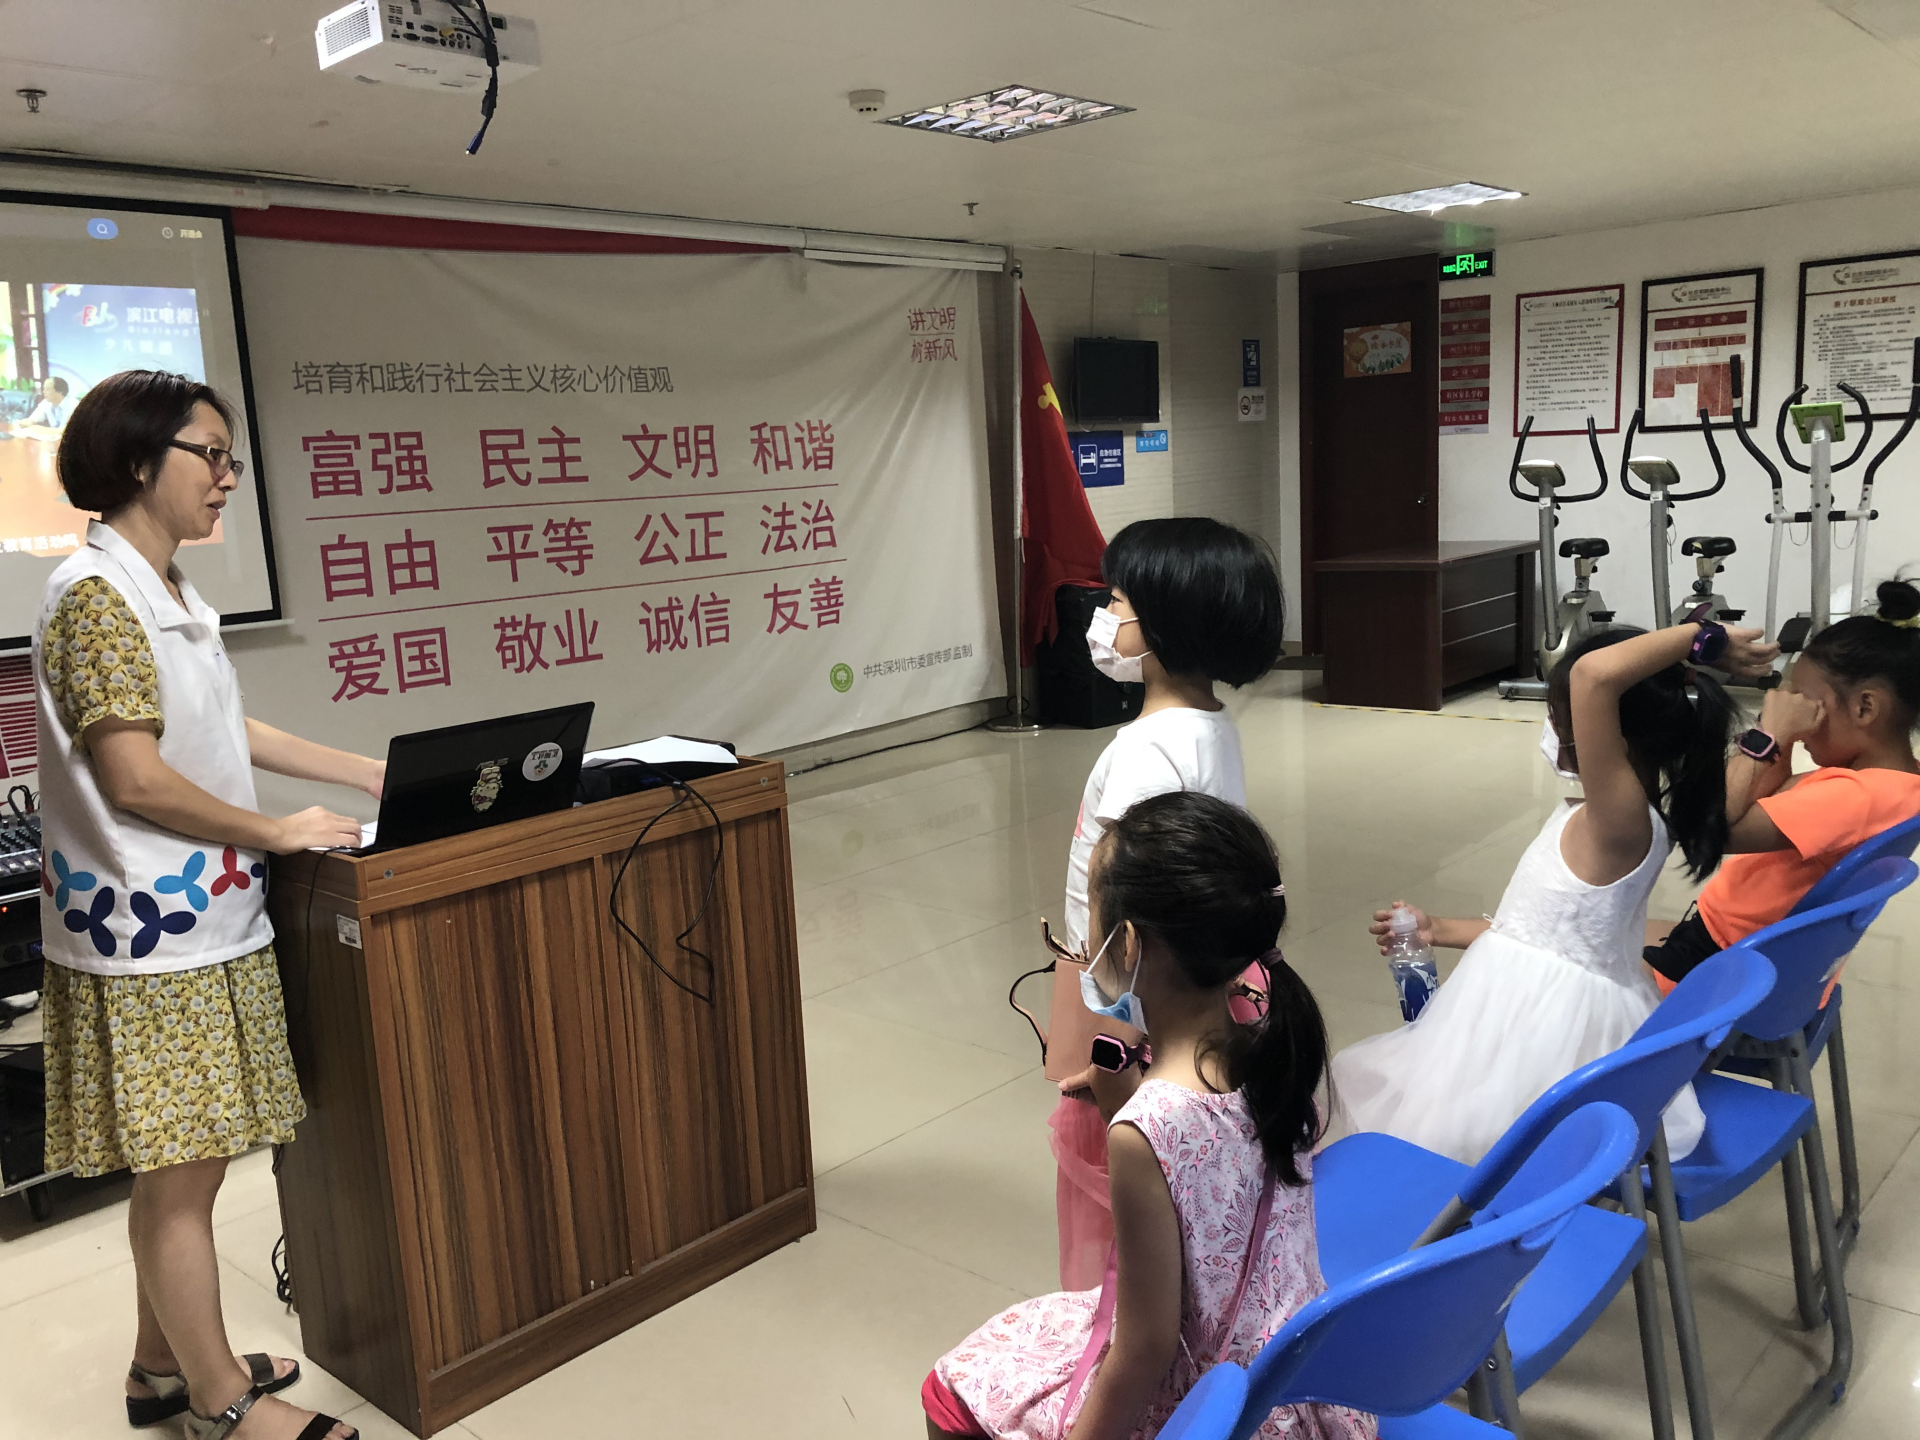 助力未成年人健康成长，上林社区开展“护蕾行动”安全教育